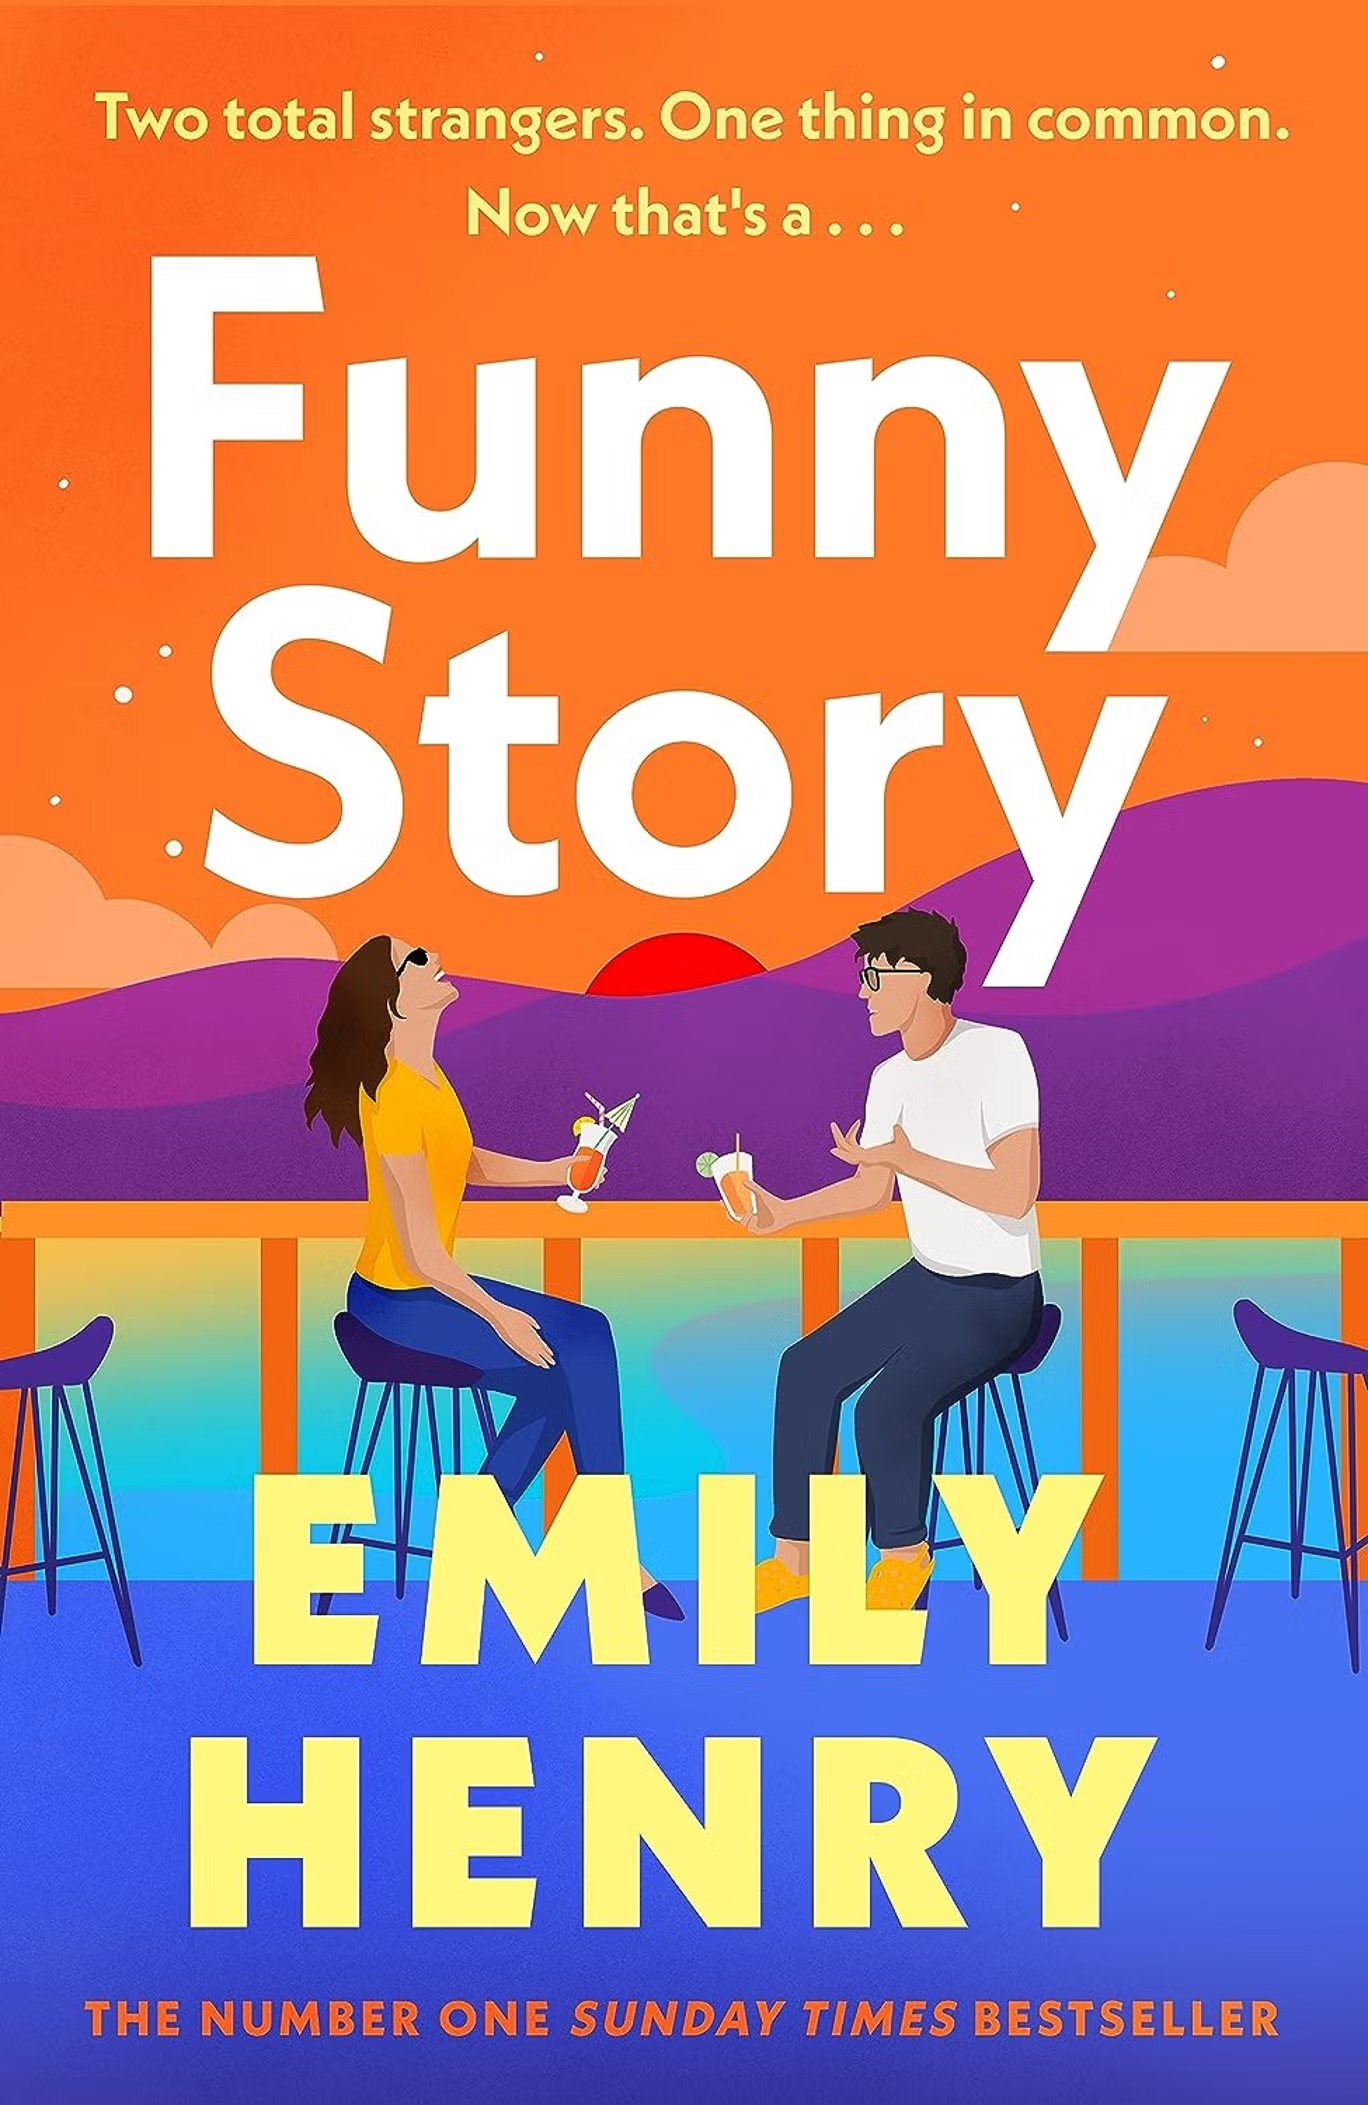 يدور كتاب إميلي هنري الجديد "قصة طريفة" حول حبيبة سابقة تنتقل للعيش مع حبيبها السابق